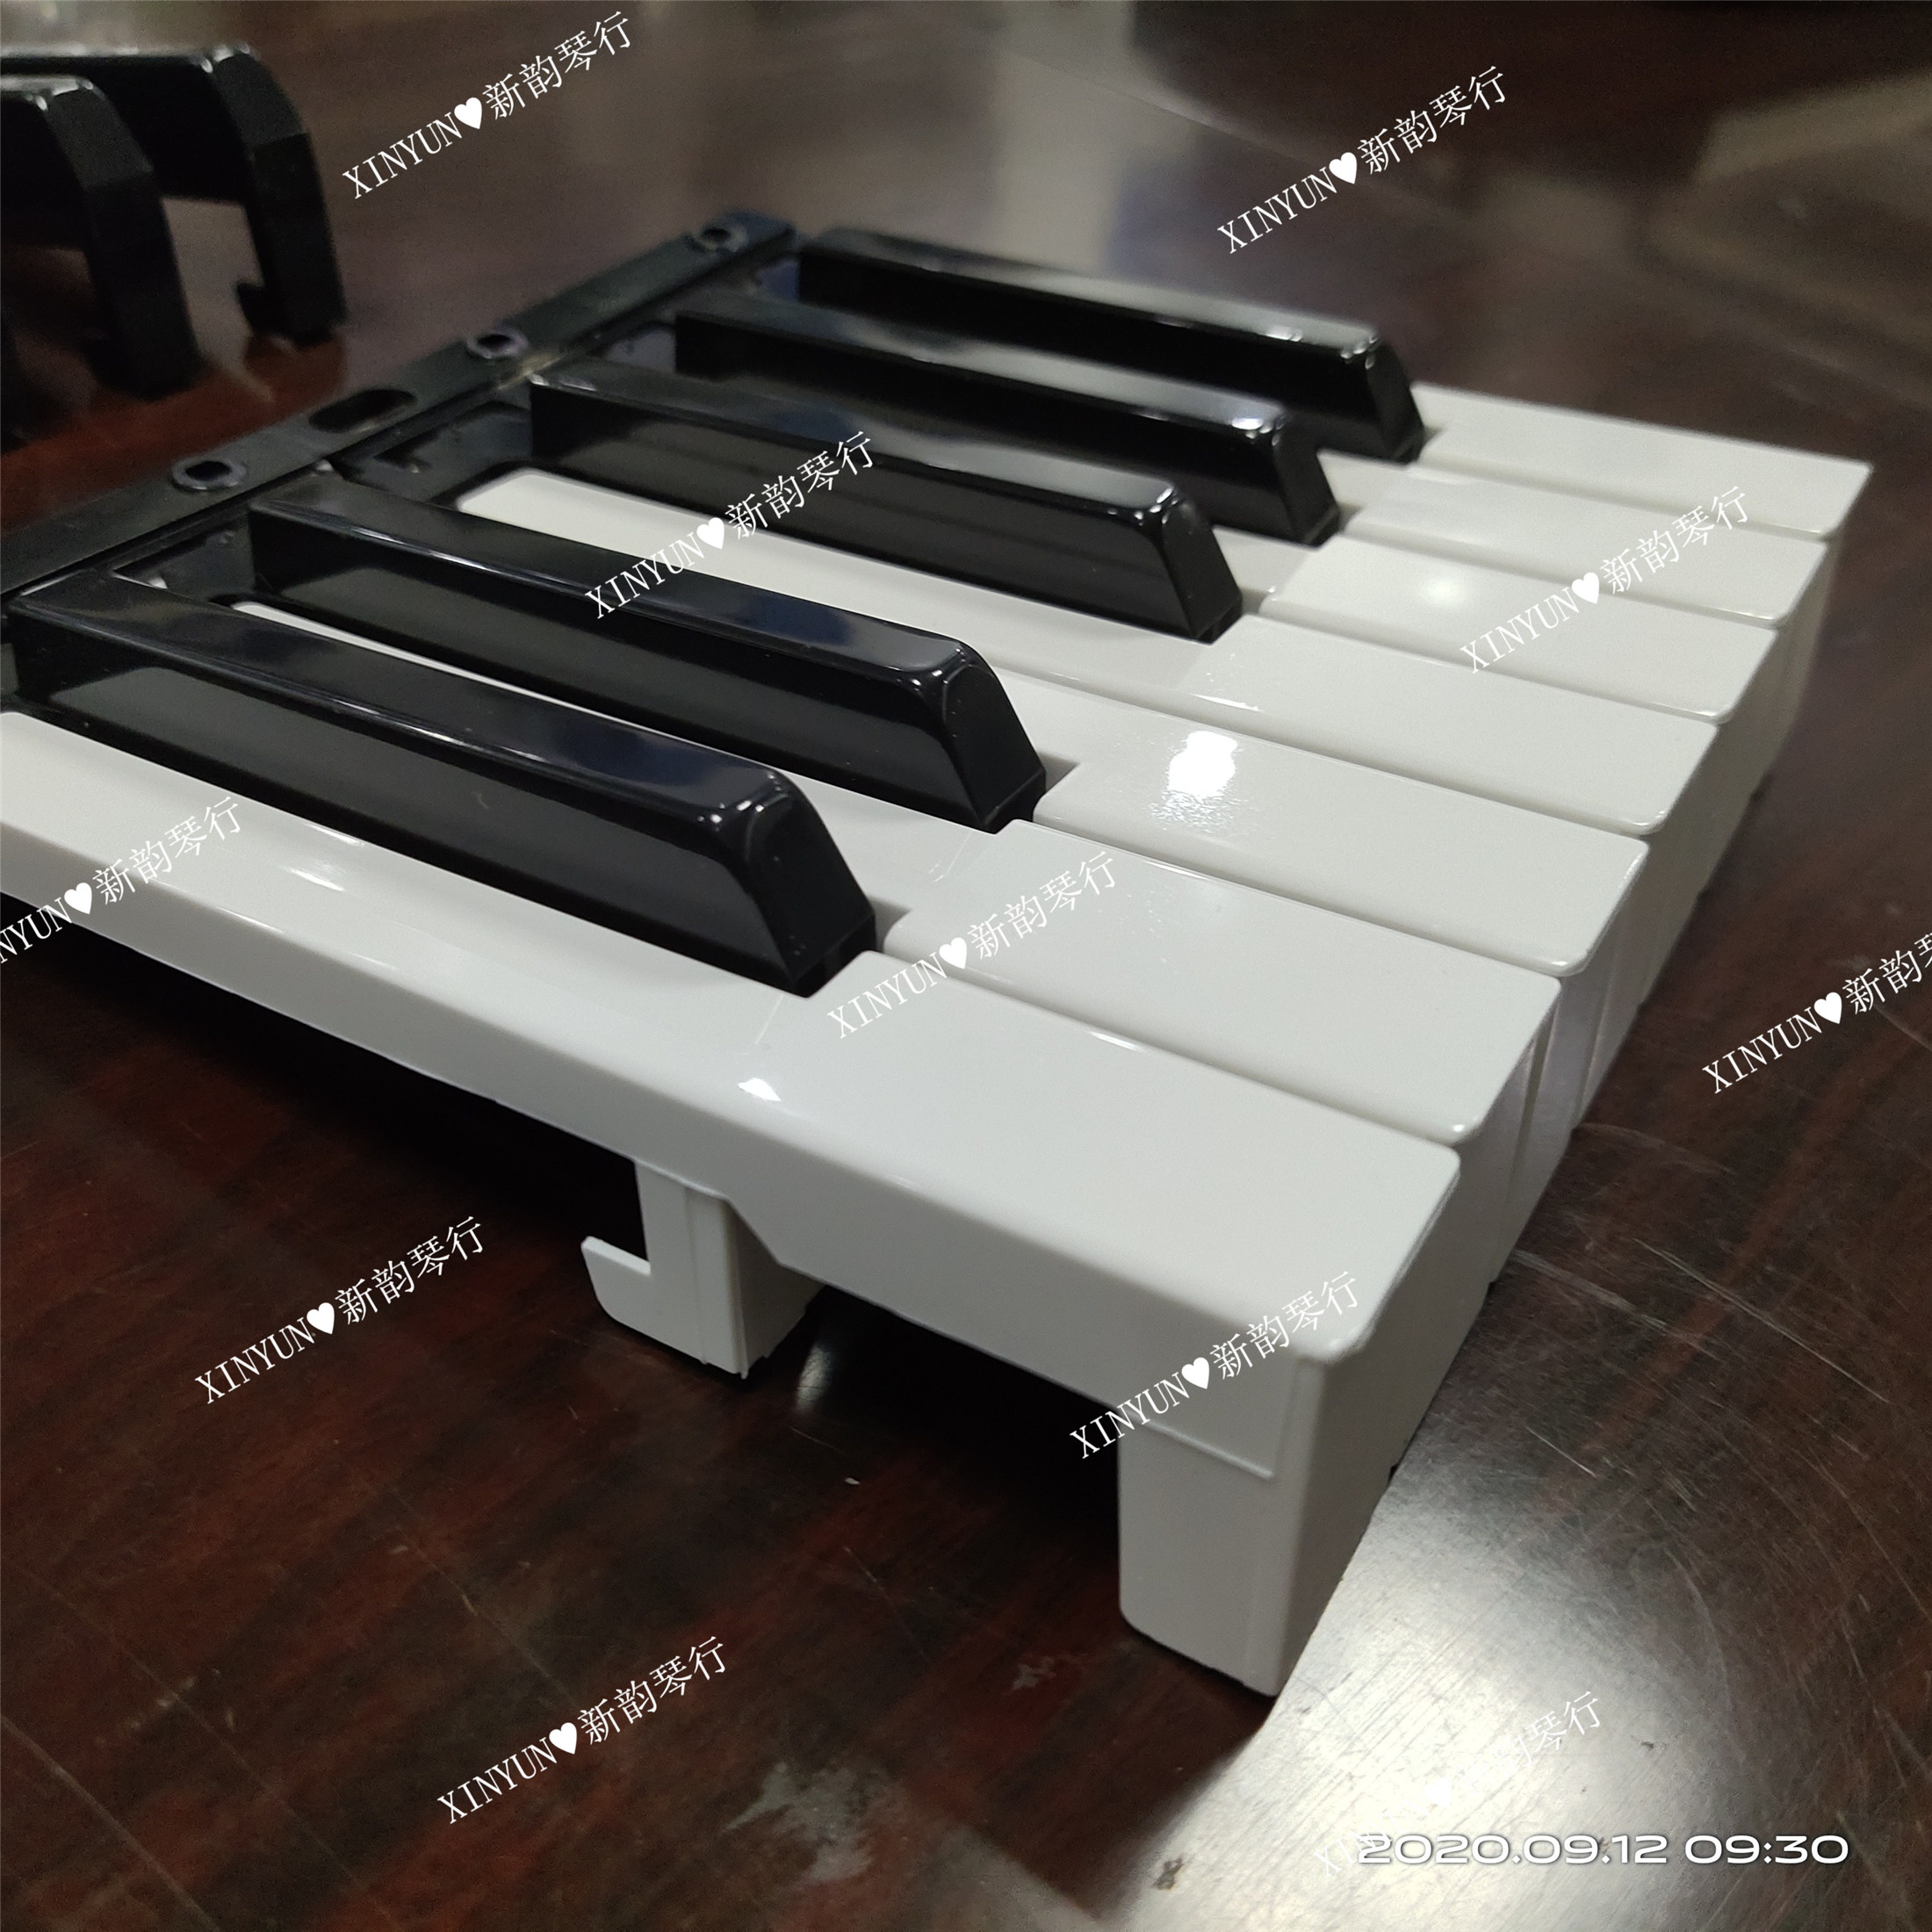 Xinyun 960, 331, 339 전자 피아노 키 49, 54, 61 키 모조 피아노 키보드 원래 액세서리 일반